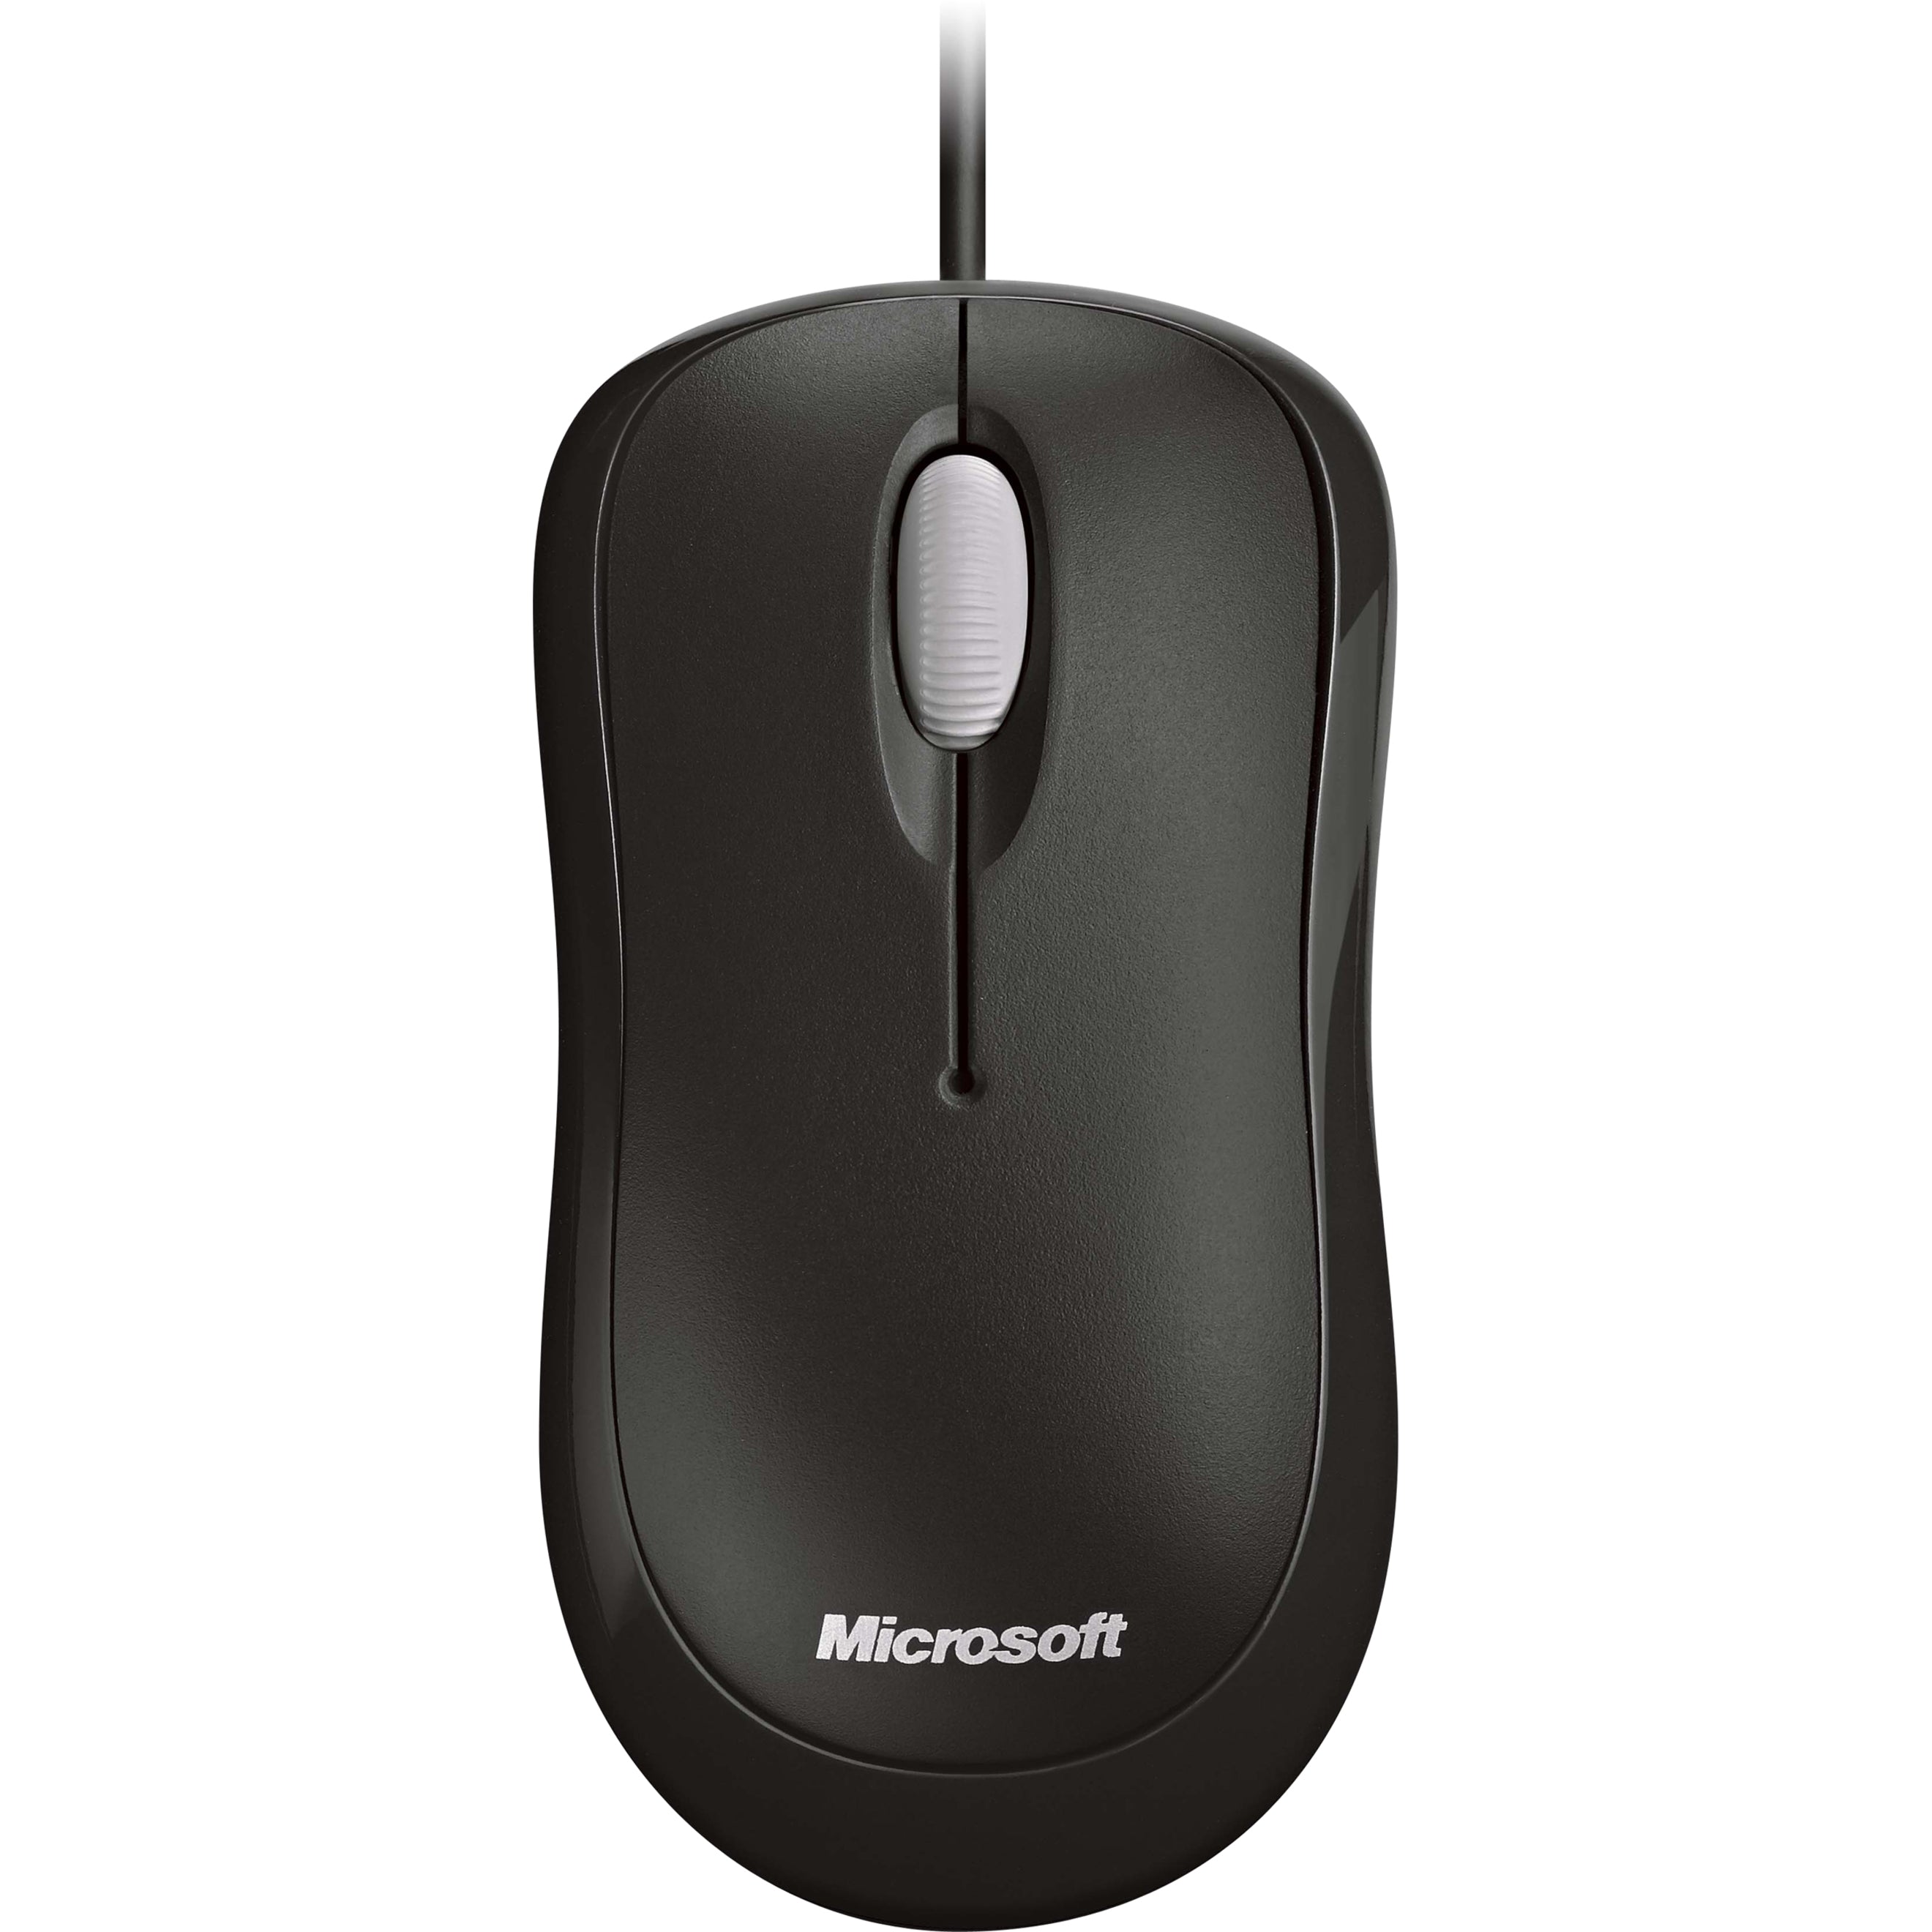 Microsoft 4YH-00005 Mouse, Ergonomic Symmetrical Design, Optical Movement Detection, 3 Buttons, 800 dpi, USB/PS/2 Connectivity